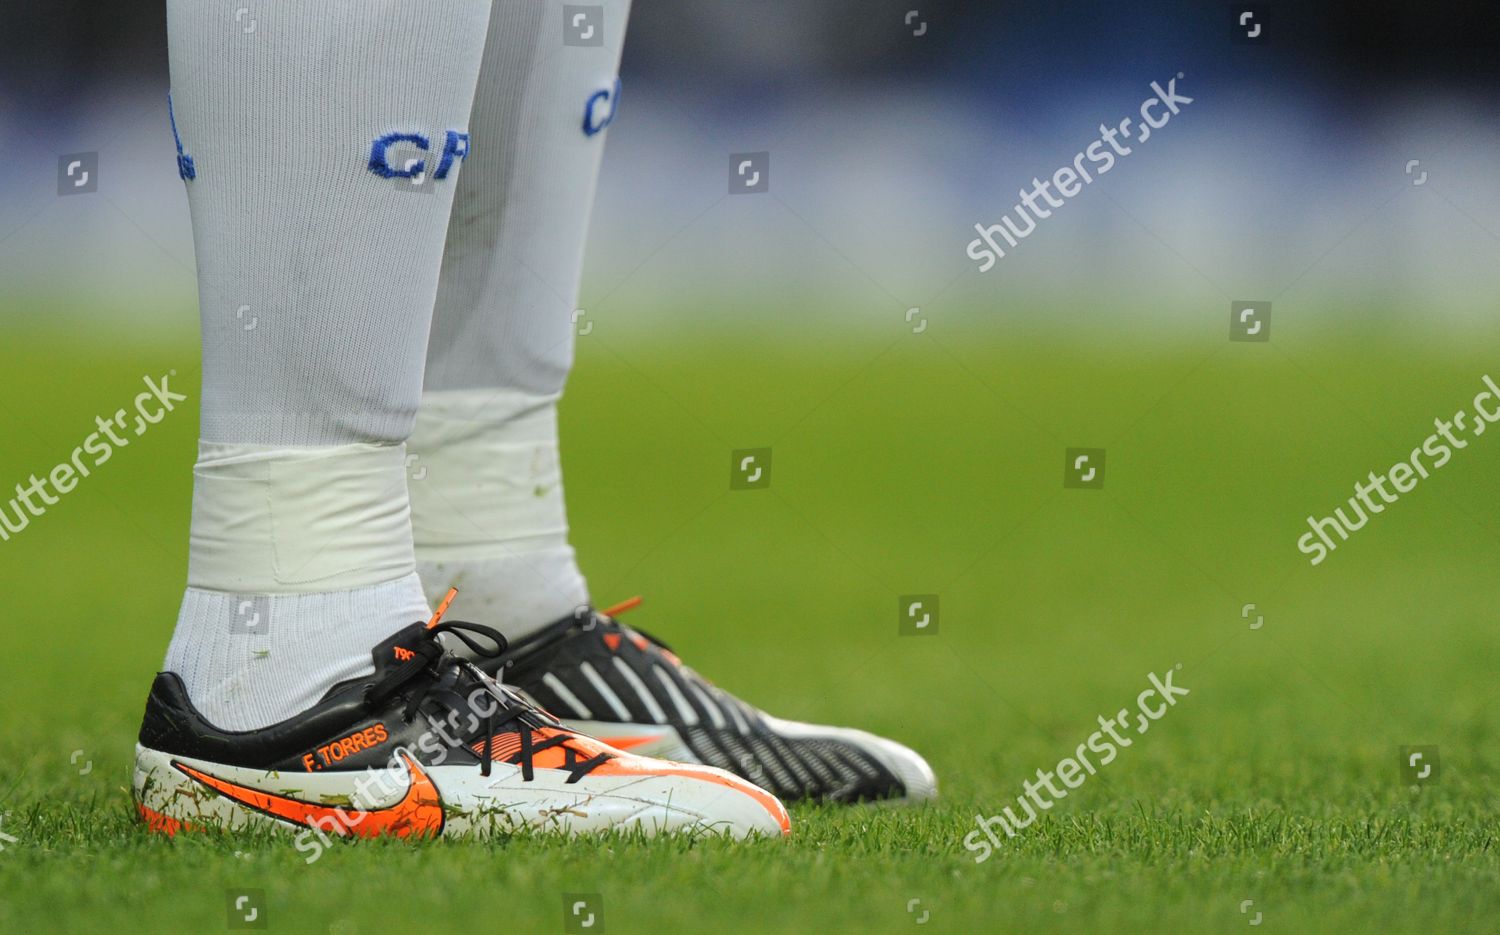 Personalised Nike T90 Boots Fernando Torres - de de contenido editorial: imagen de stock | Shutterstock